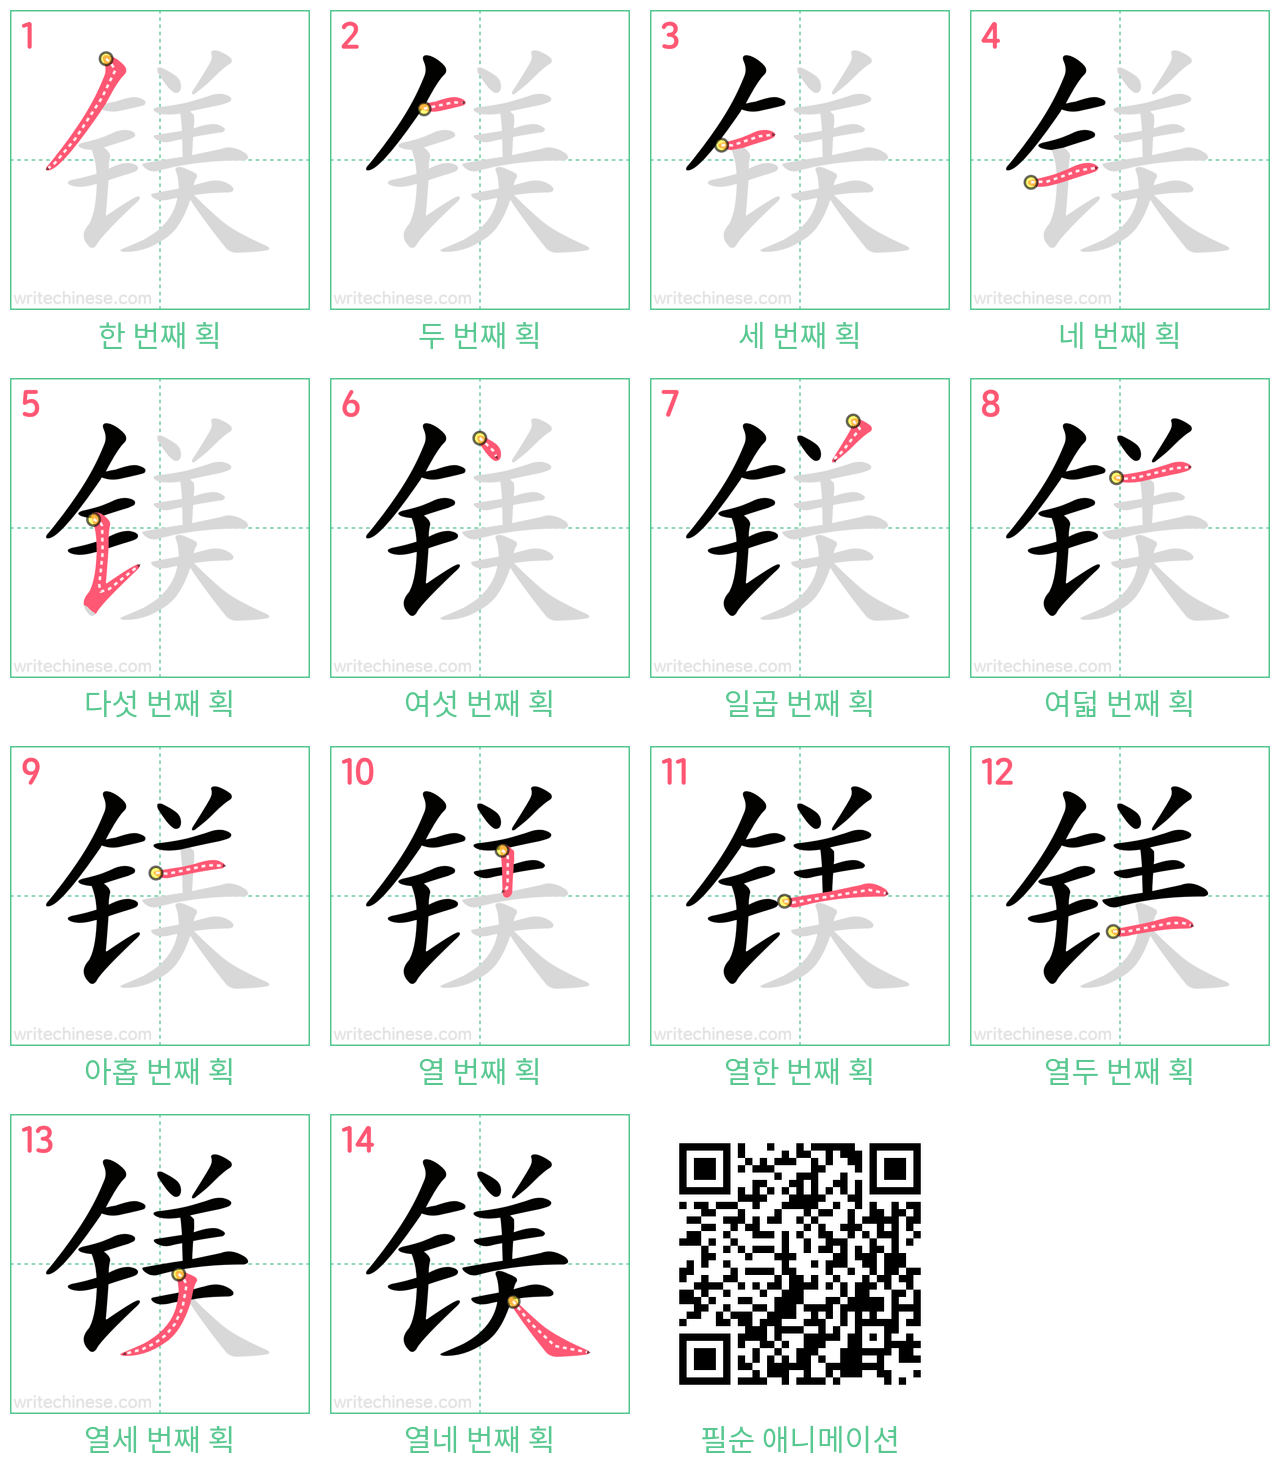 镁 step-by-step stroke order diagrams